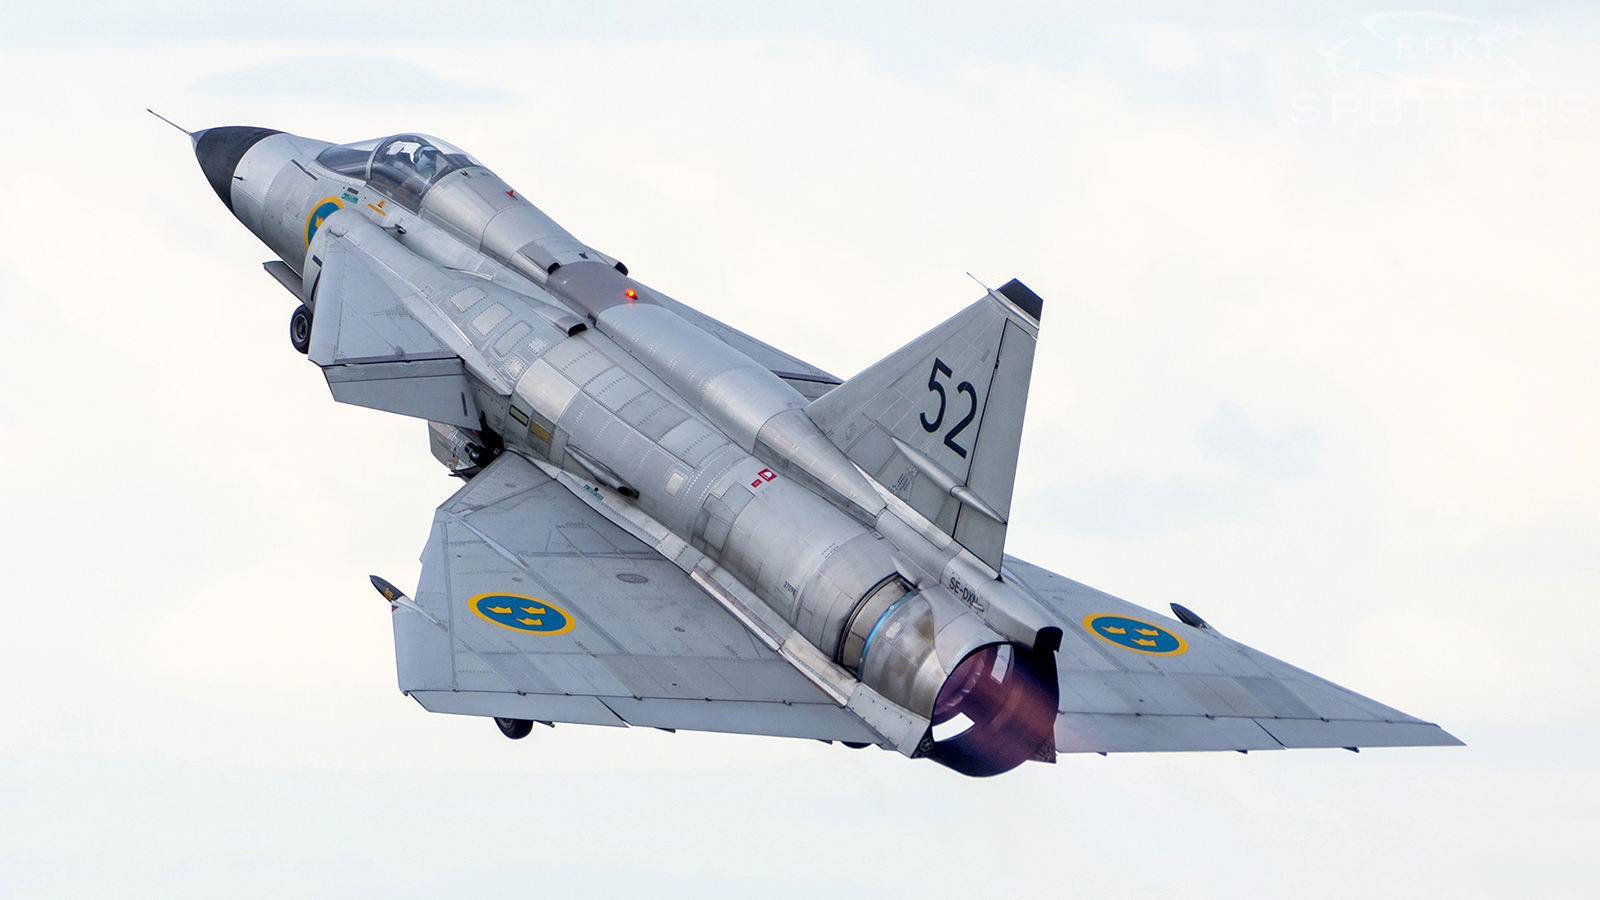 SE-DXN - Saab AJS-37 Viggen (Swedish Air Force Historical Flight (SwAFHF)) / Volkel Ab - Volkel Netherlands [EHVK/UDE]